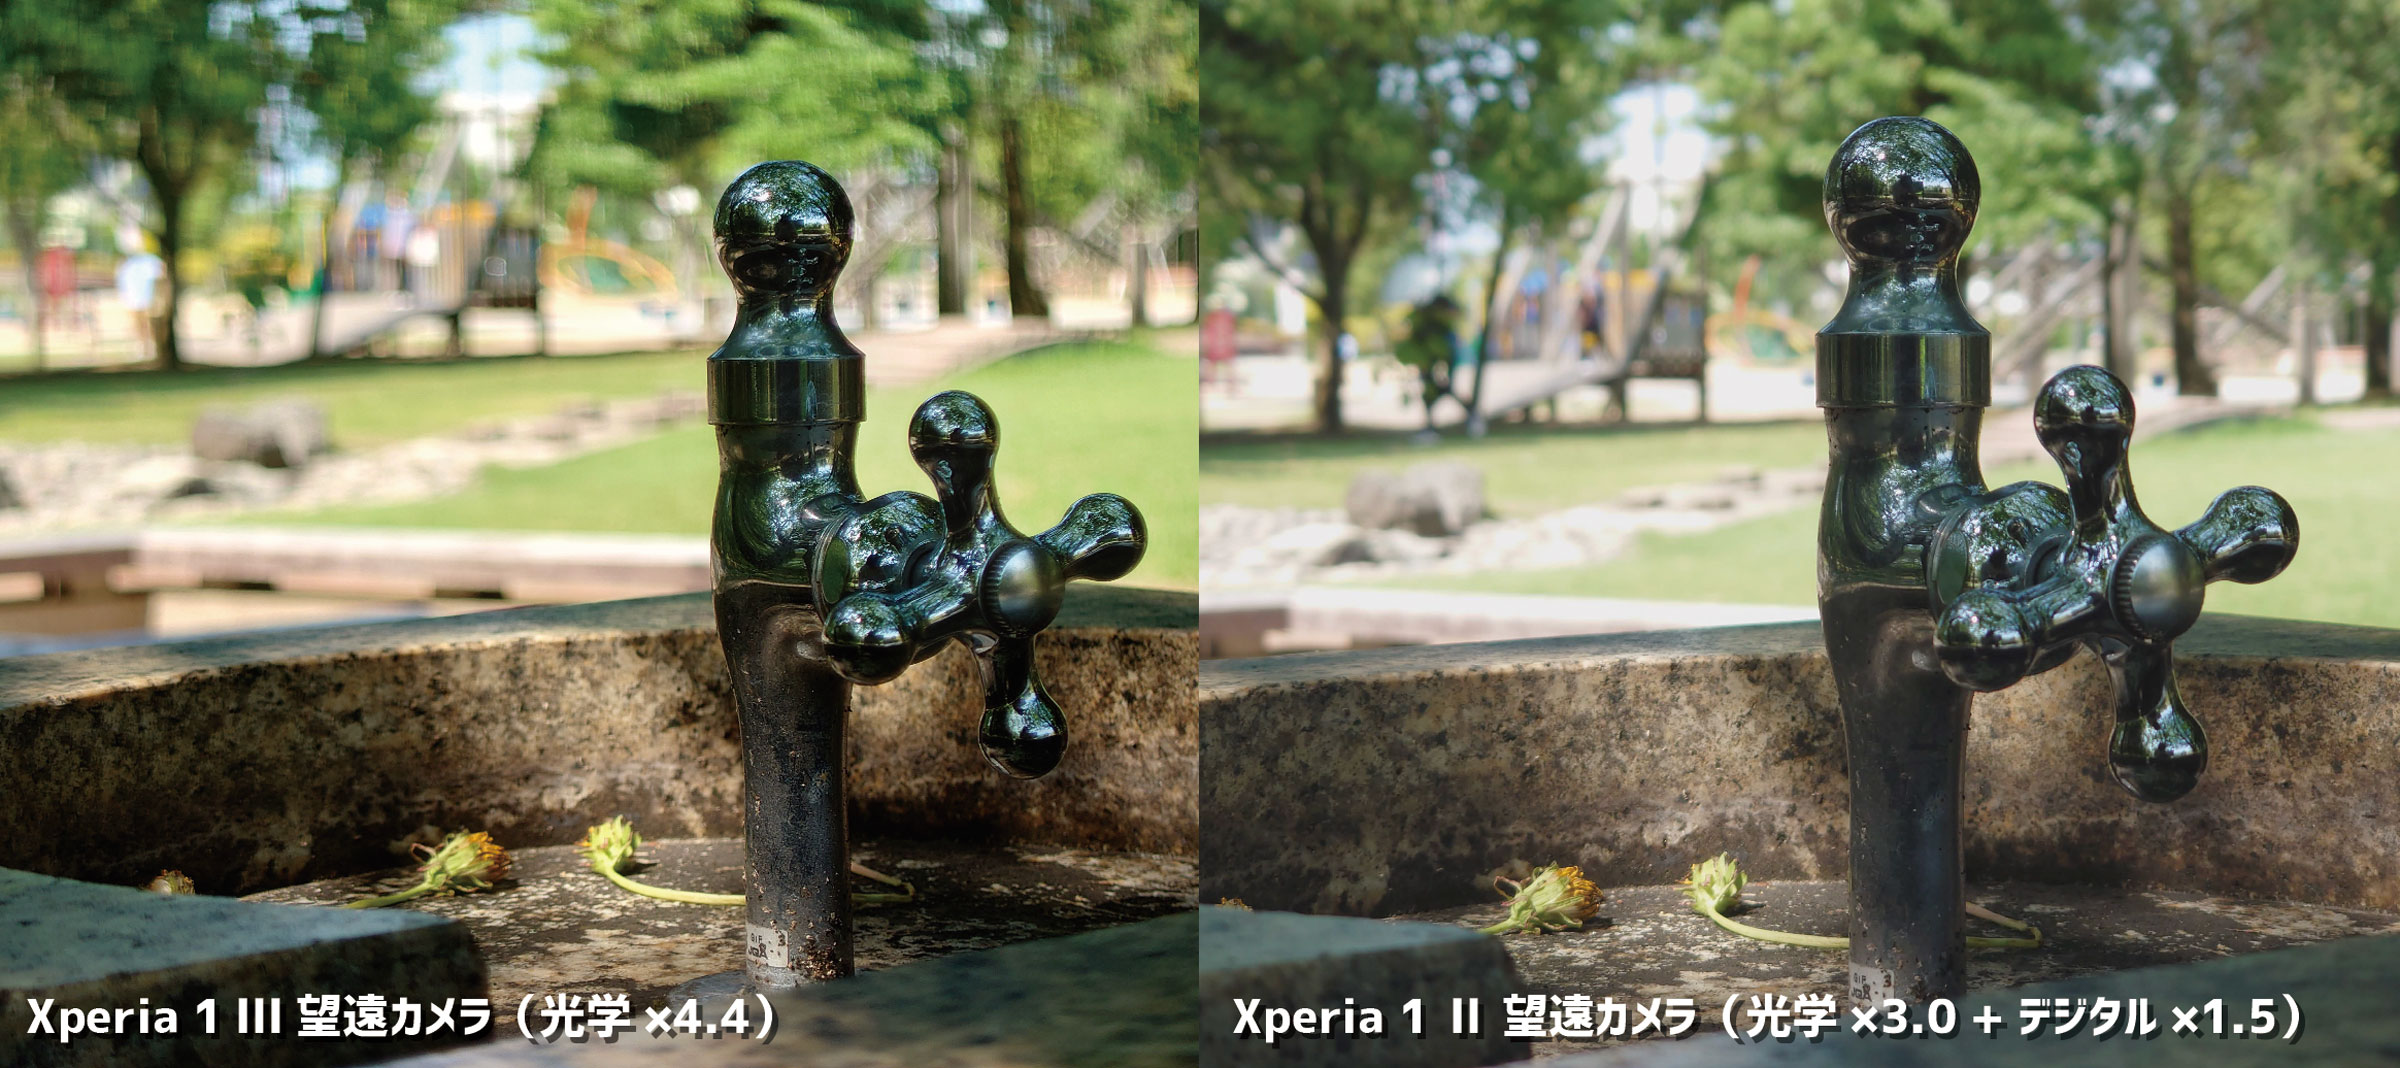 Xperia 1 IIIとXperia 1 IIの望遠カメラ比較